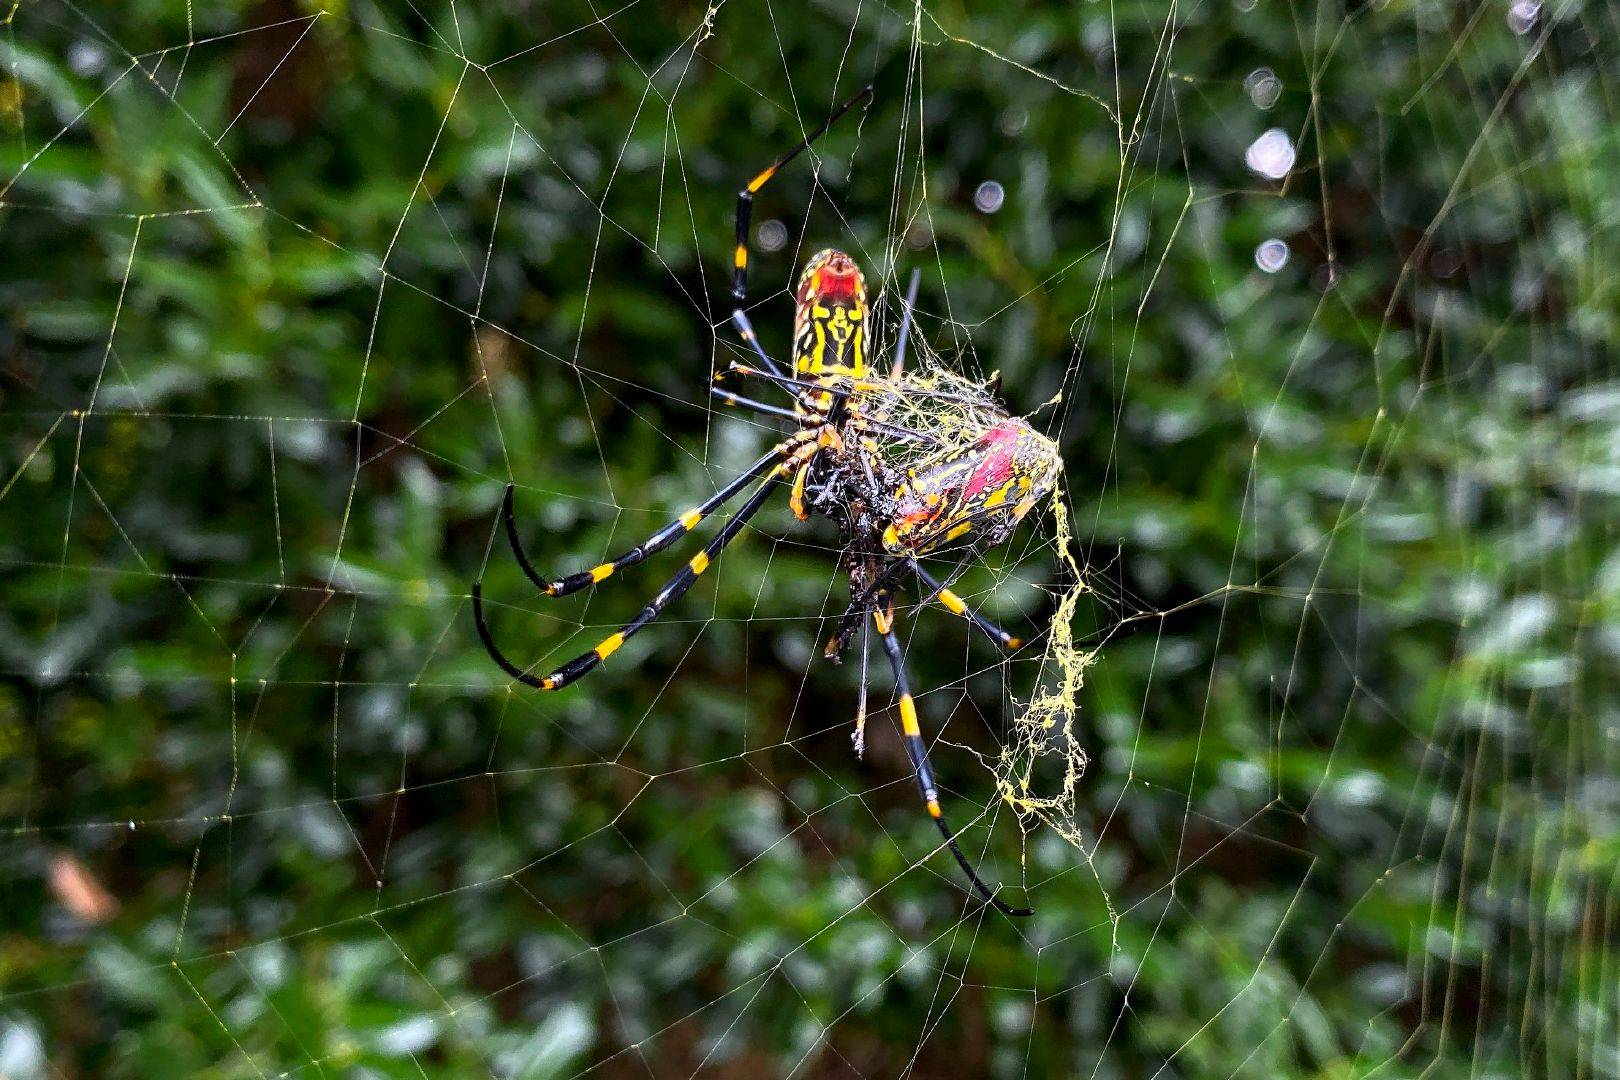 巨型蜘蛛入侵图片